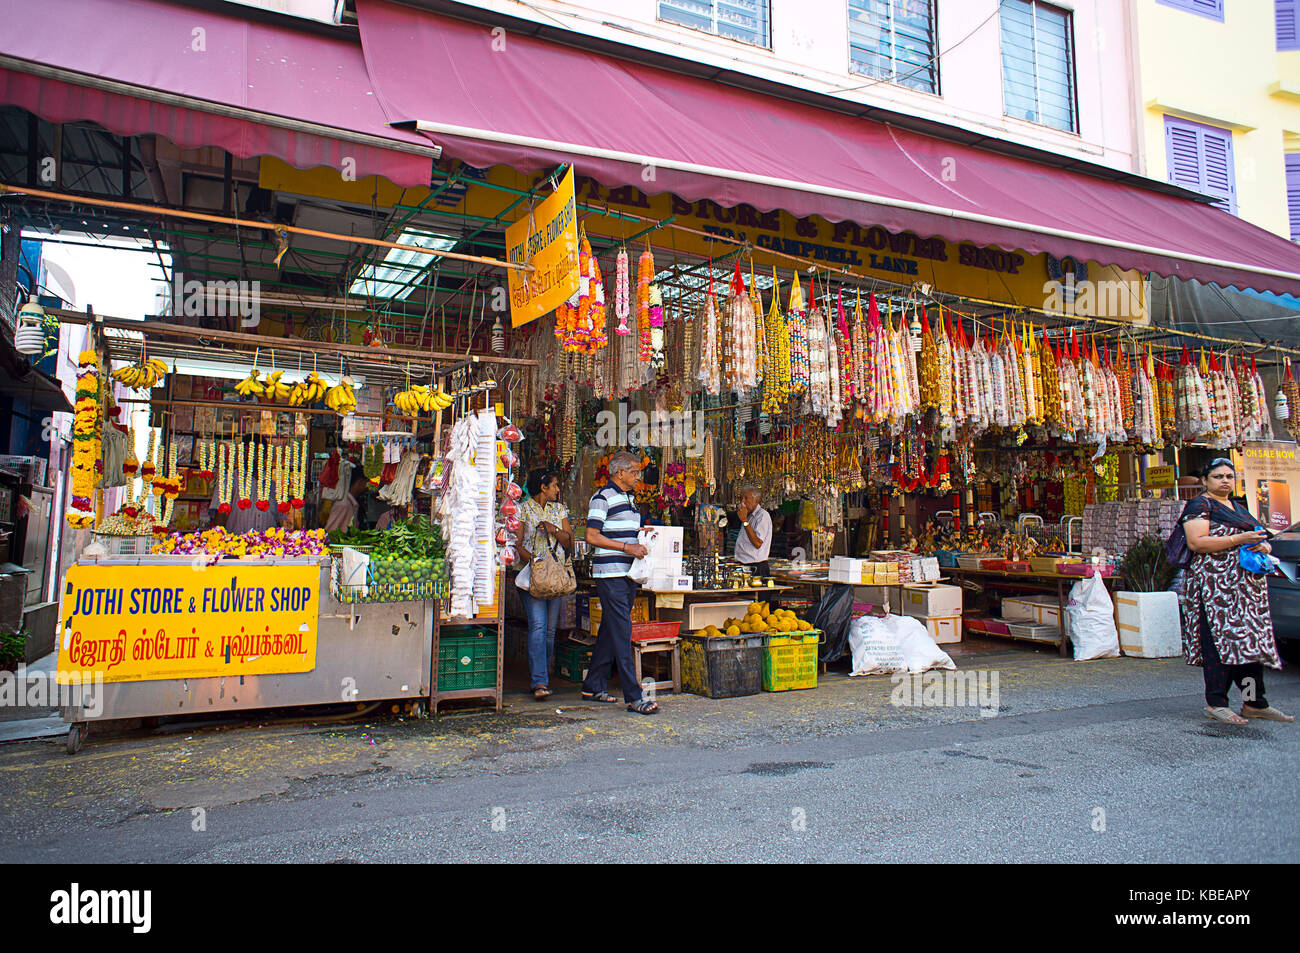 Hilera de tiendas en Little India, centro de la gran comunidad india de la ciudad y uno de sus distritos más vibrantes. Singapur Foto de stock